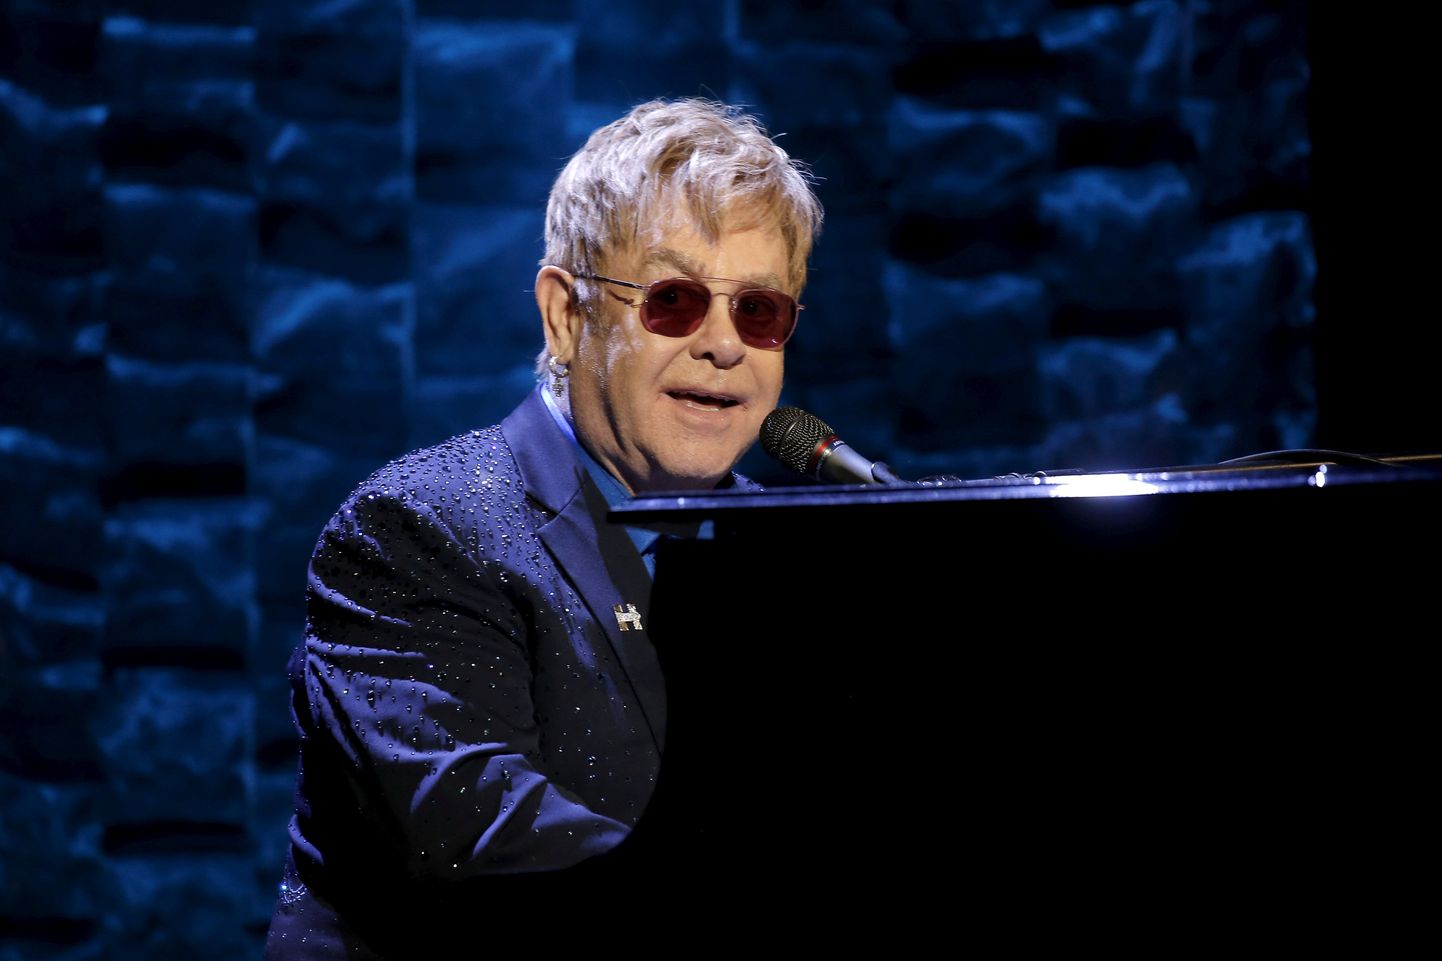 76-aastane Elton John oma hinnalise kraami külge ei klammerdu: muusik müüs maha oma katusekorteri Atlantas ja paneb oksjonile kunstiteoseid, riideid ja isegi klaveri.